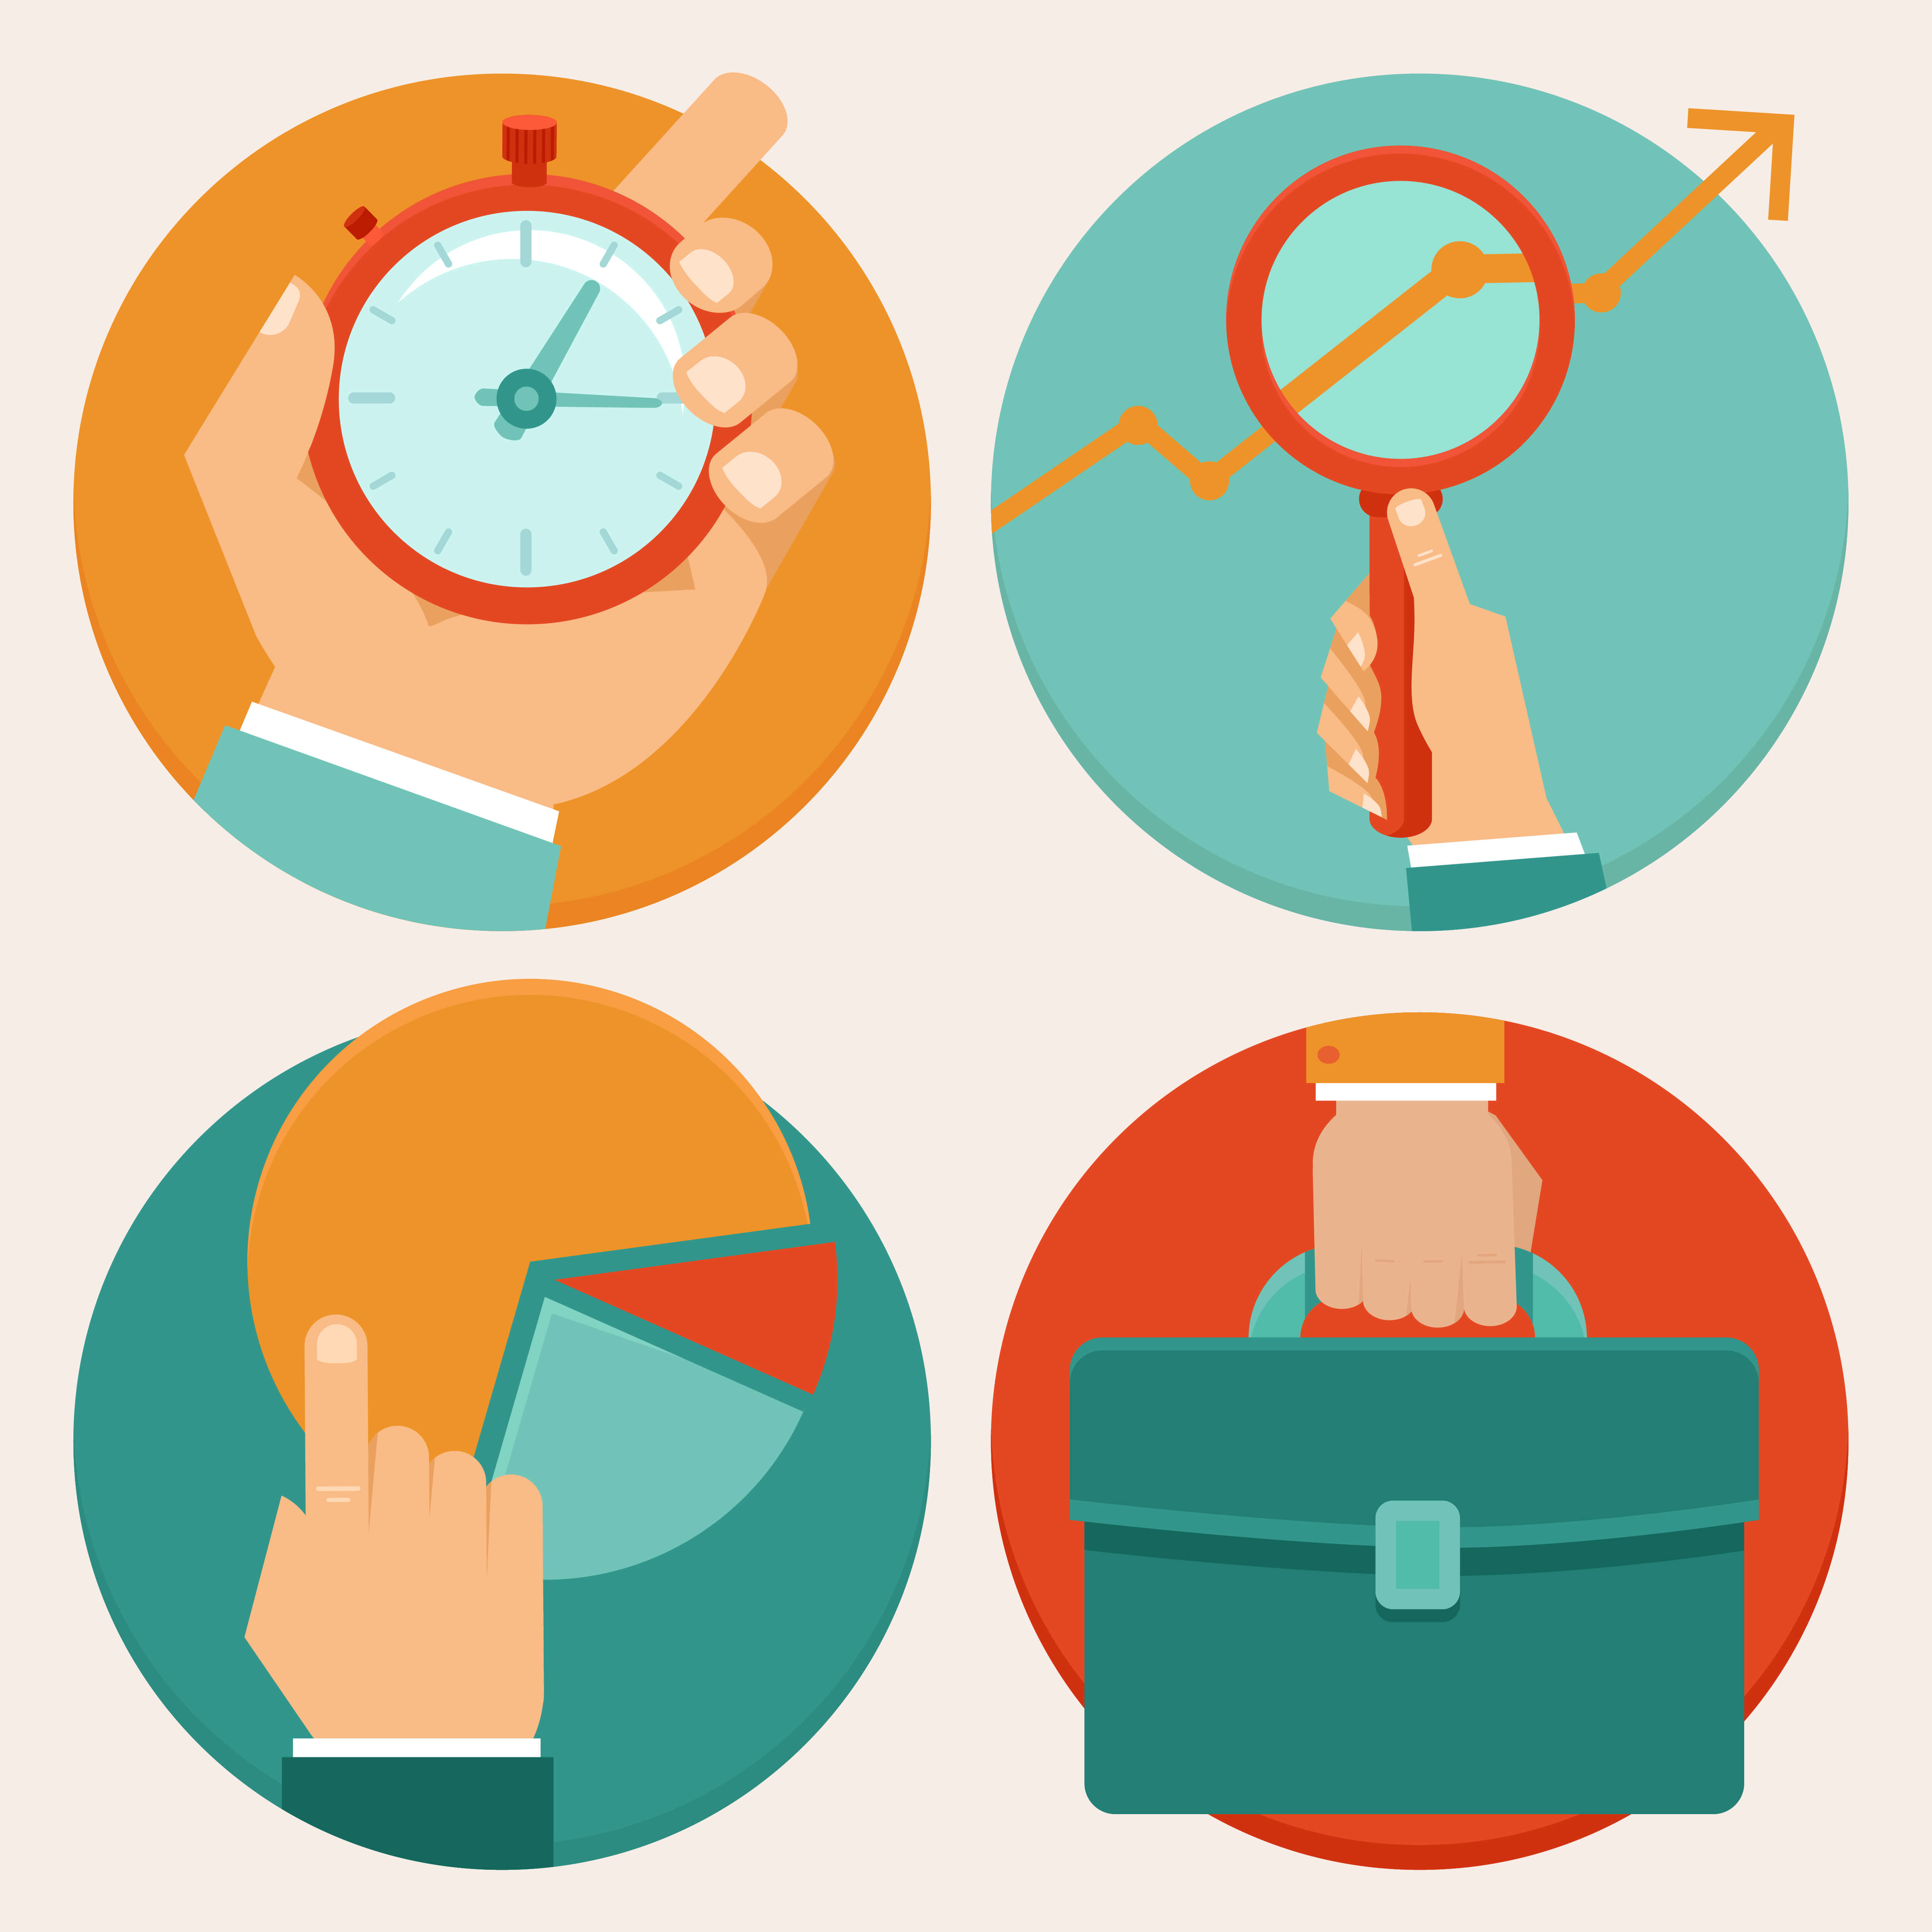 Desenhos de mão legurando um relógio, uma lupa, um gráfico pizza e uma bolsa tipo pasta para ilustrar como evitar falhas e atrasos nas rotinas de trabalho jurídicas